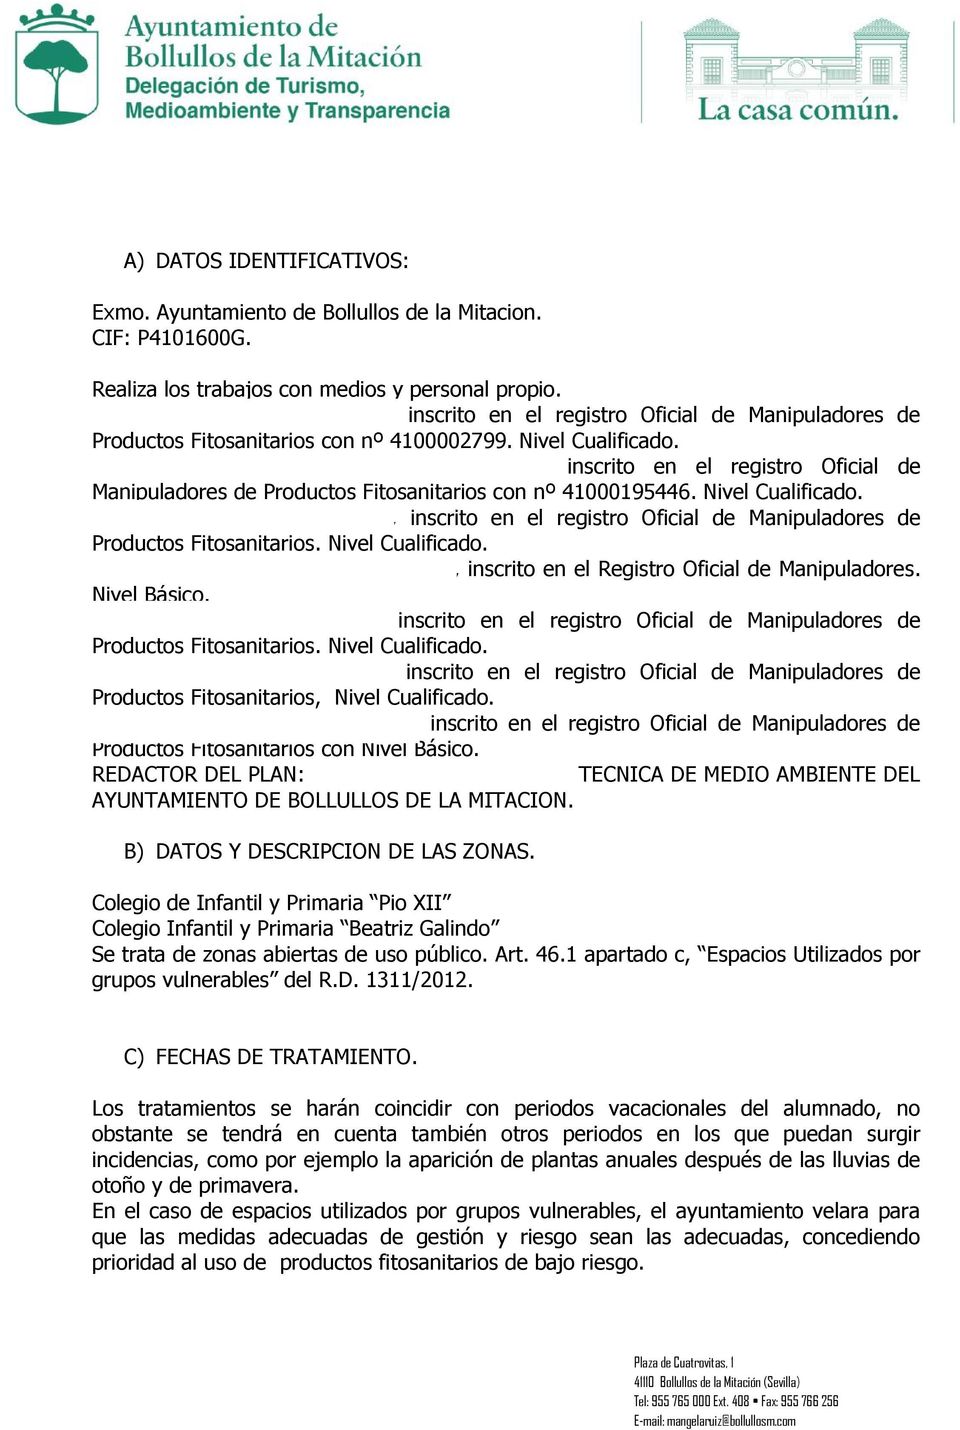 Francisco Antonio Berraquero Sánchez: inscrito en el registro Oficial de Manipuladores de Productos Fitosanitarios con nº 41000195446. Nivel Cualificado.